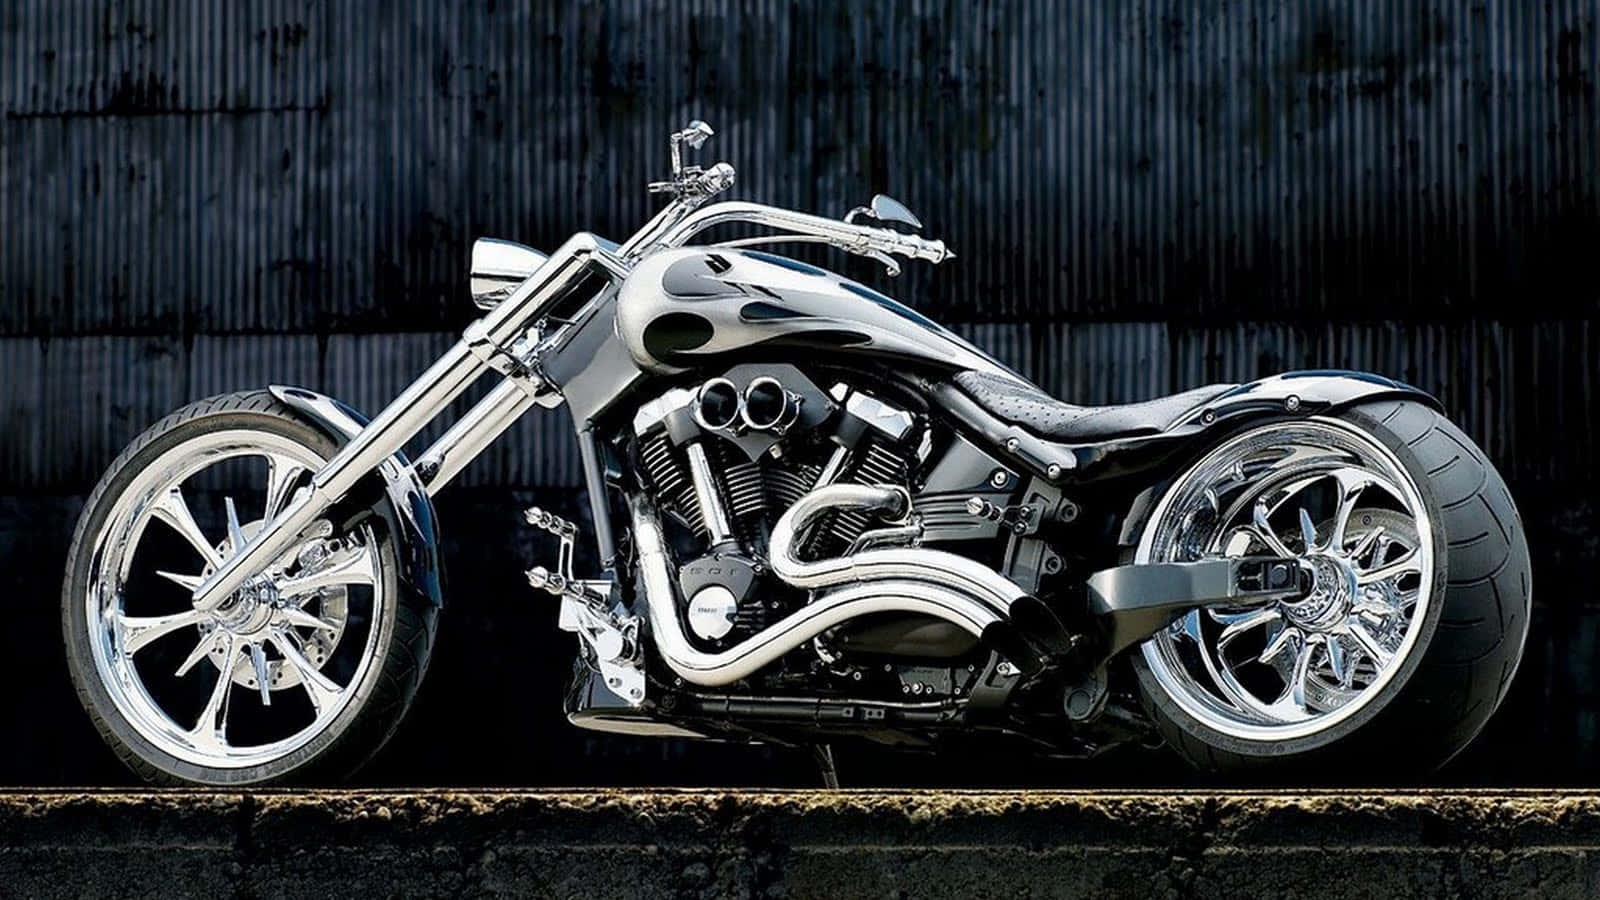 Nyd en spændende og speciel tur på en tilpasset HD-motorcykel. Wallpaper